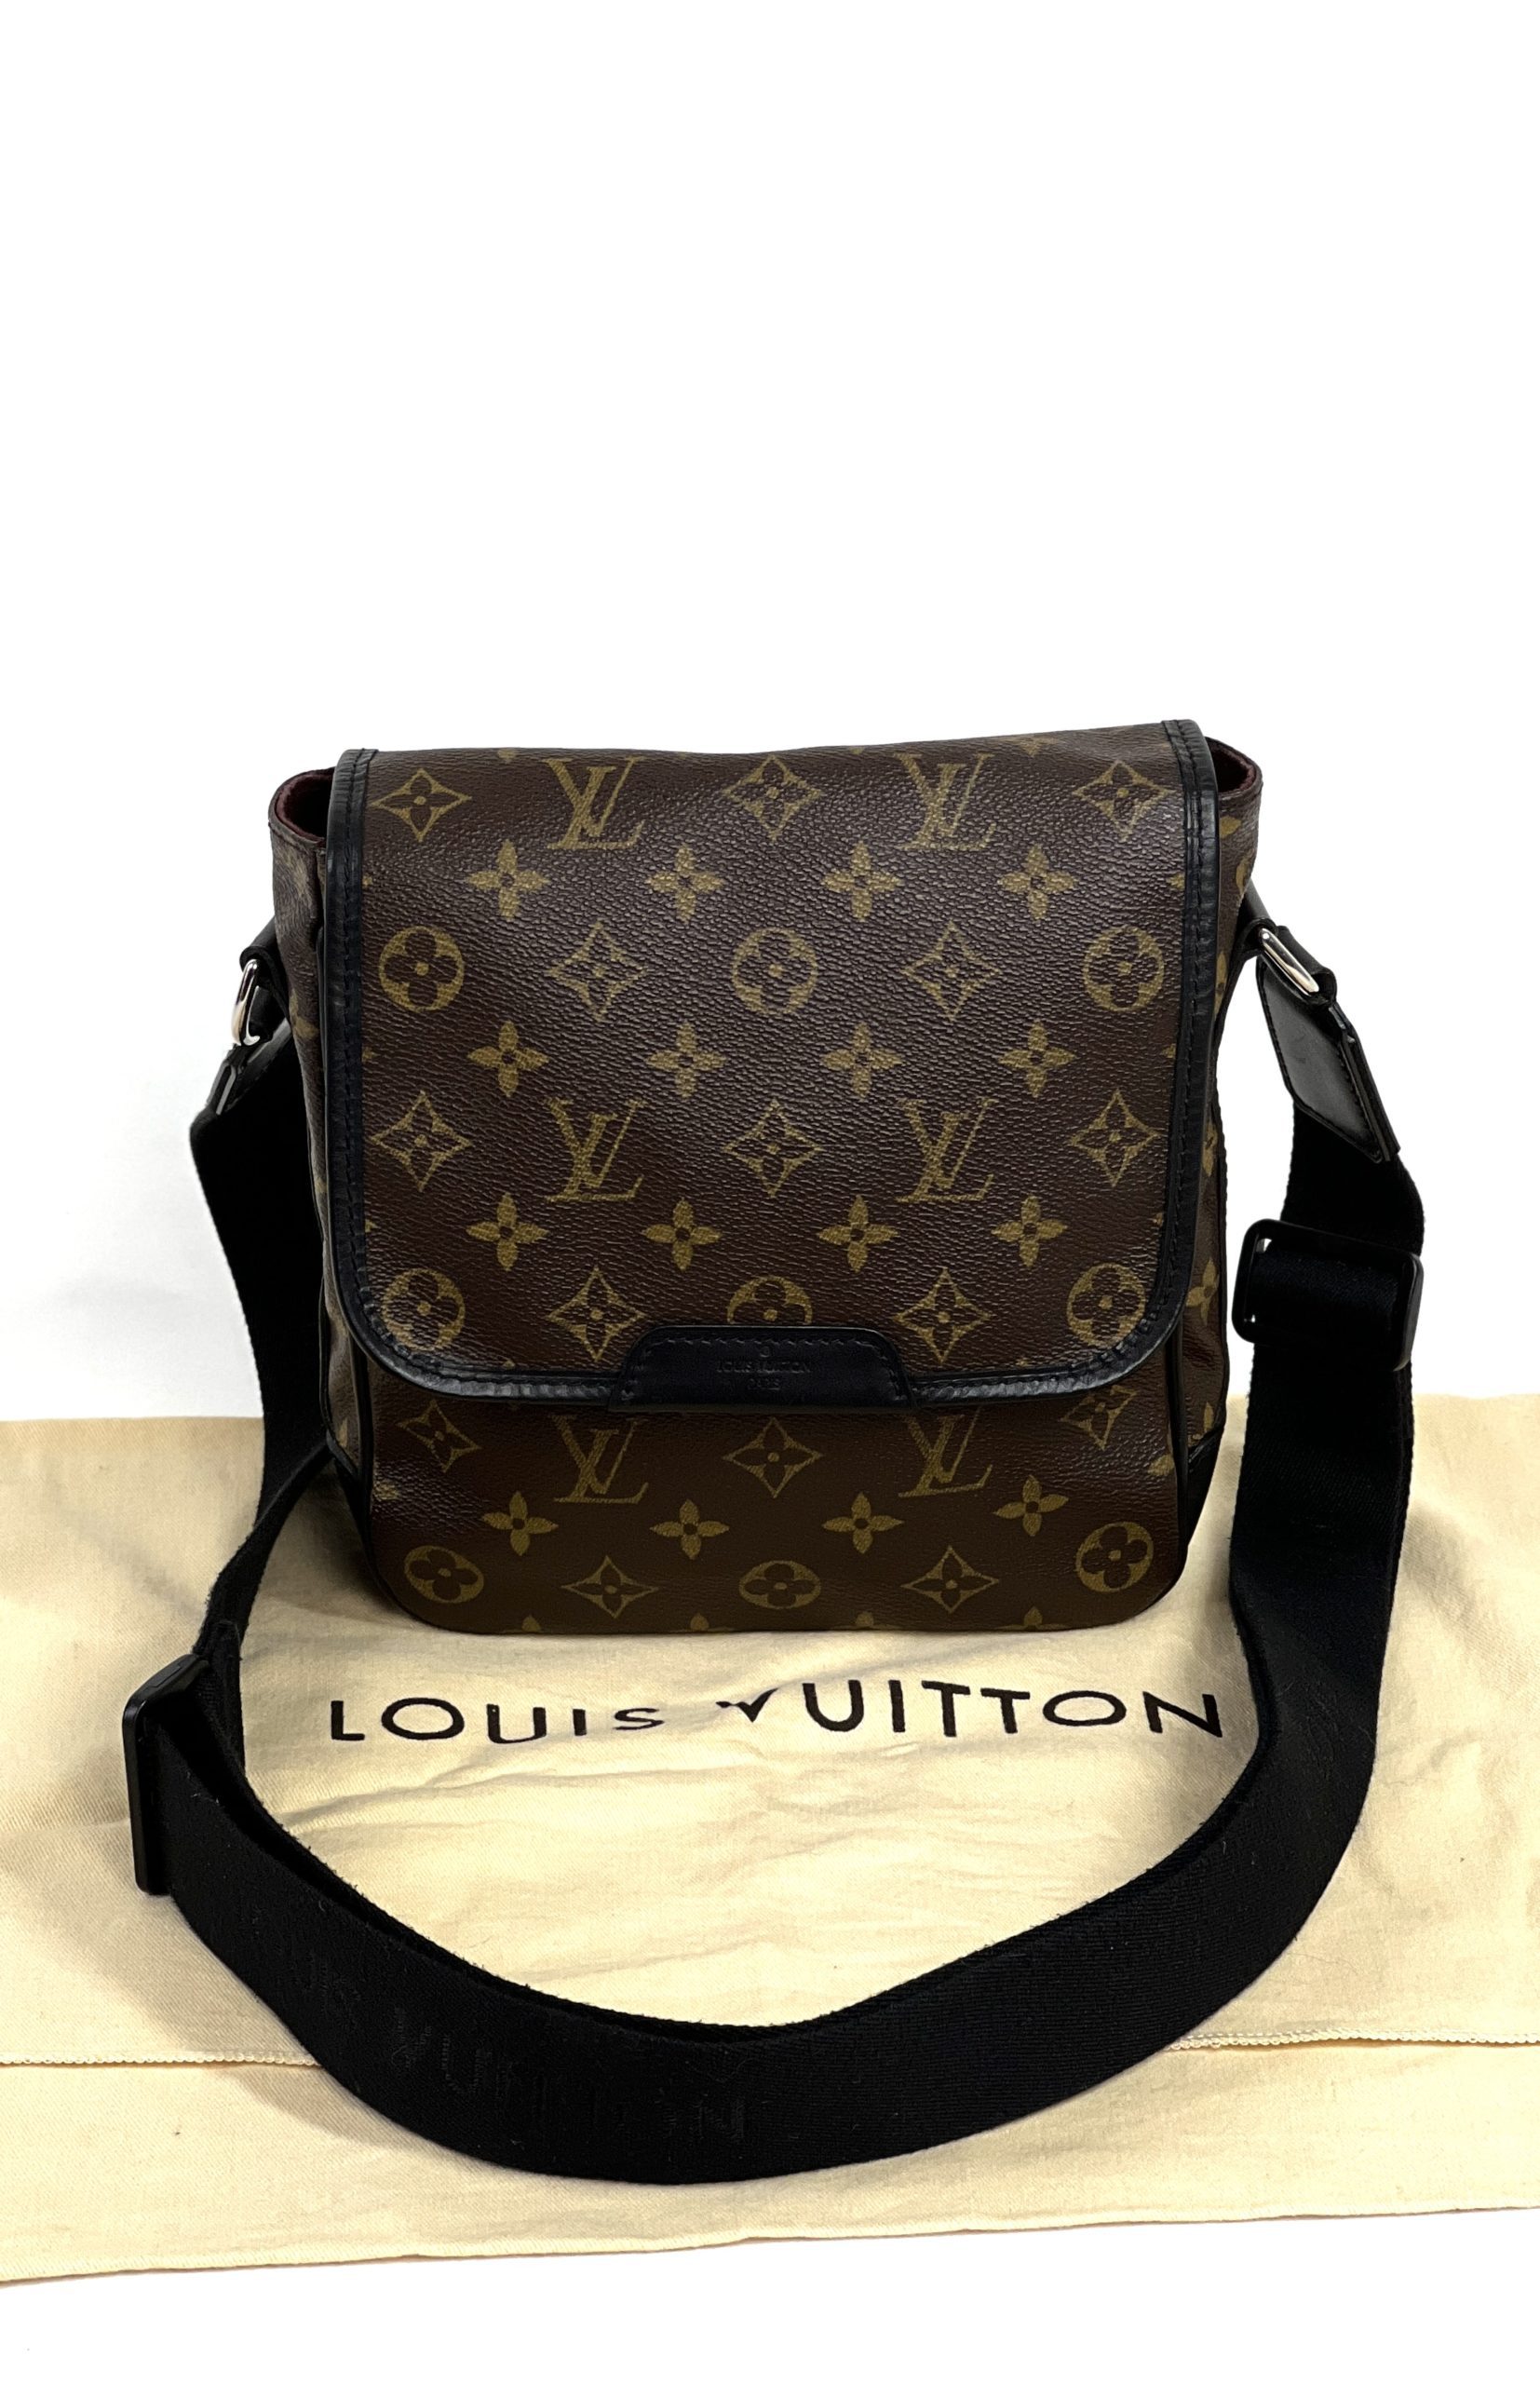 Louis Vuitton Bass Monogram Macassar Pm 8lk1219 Cross Body Bag, Louis  Vuitton